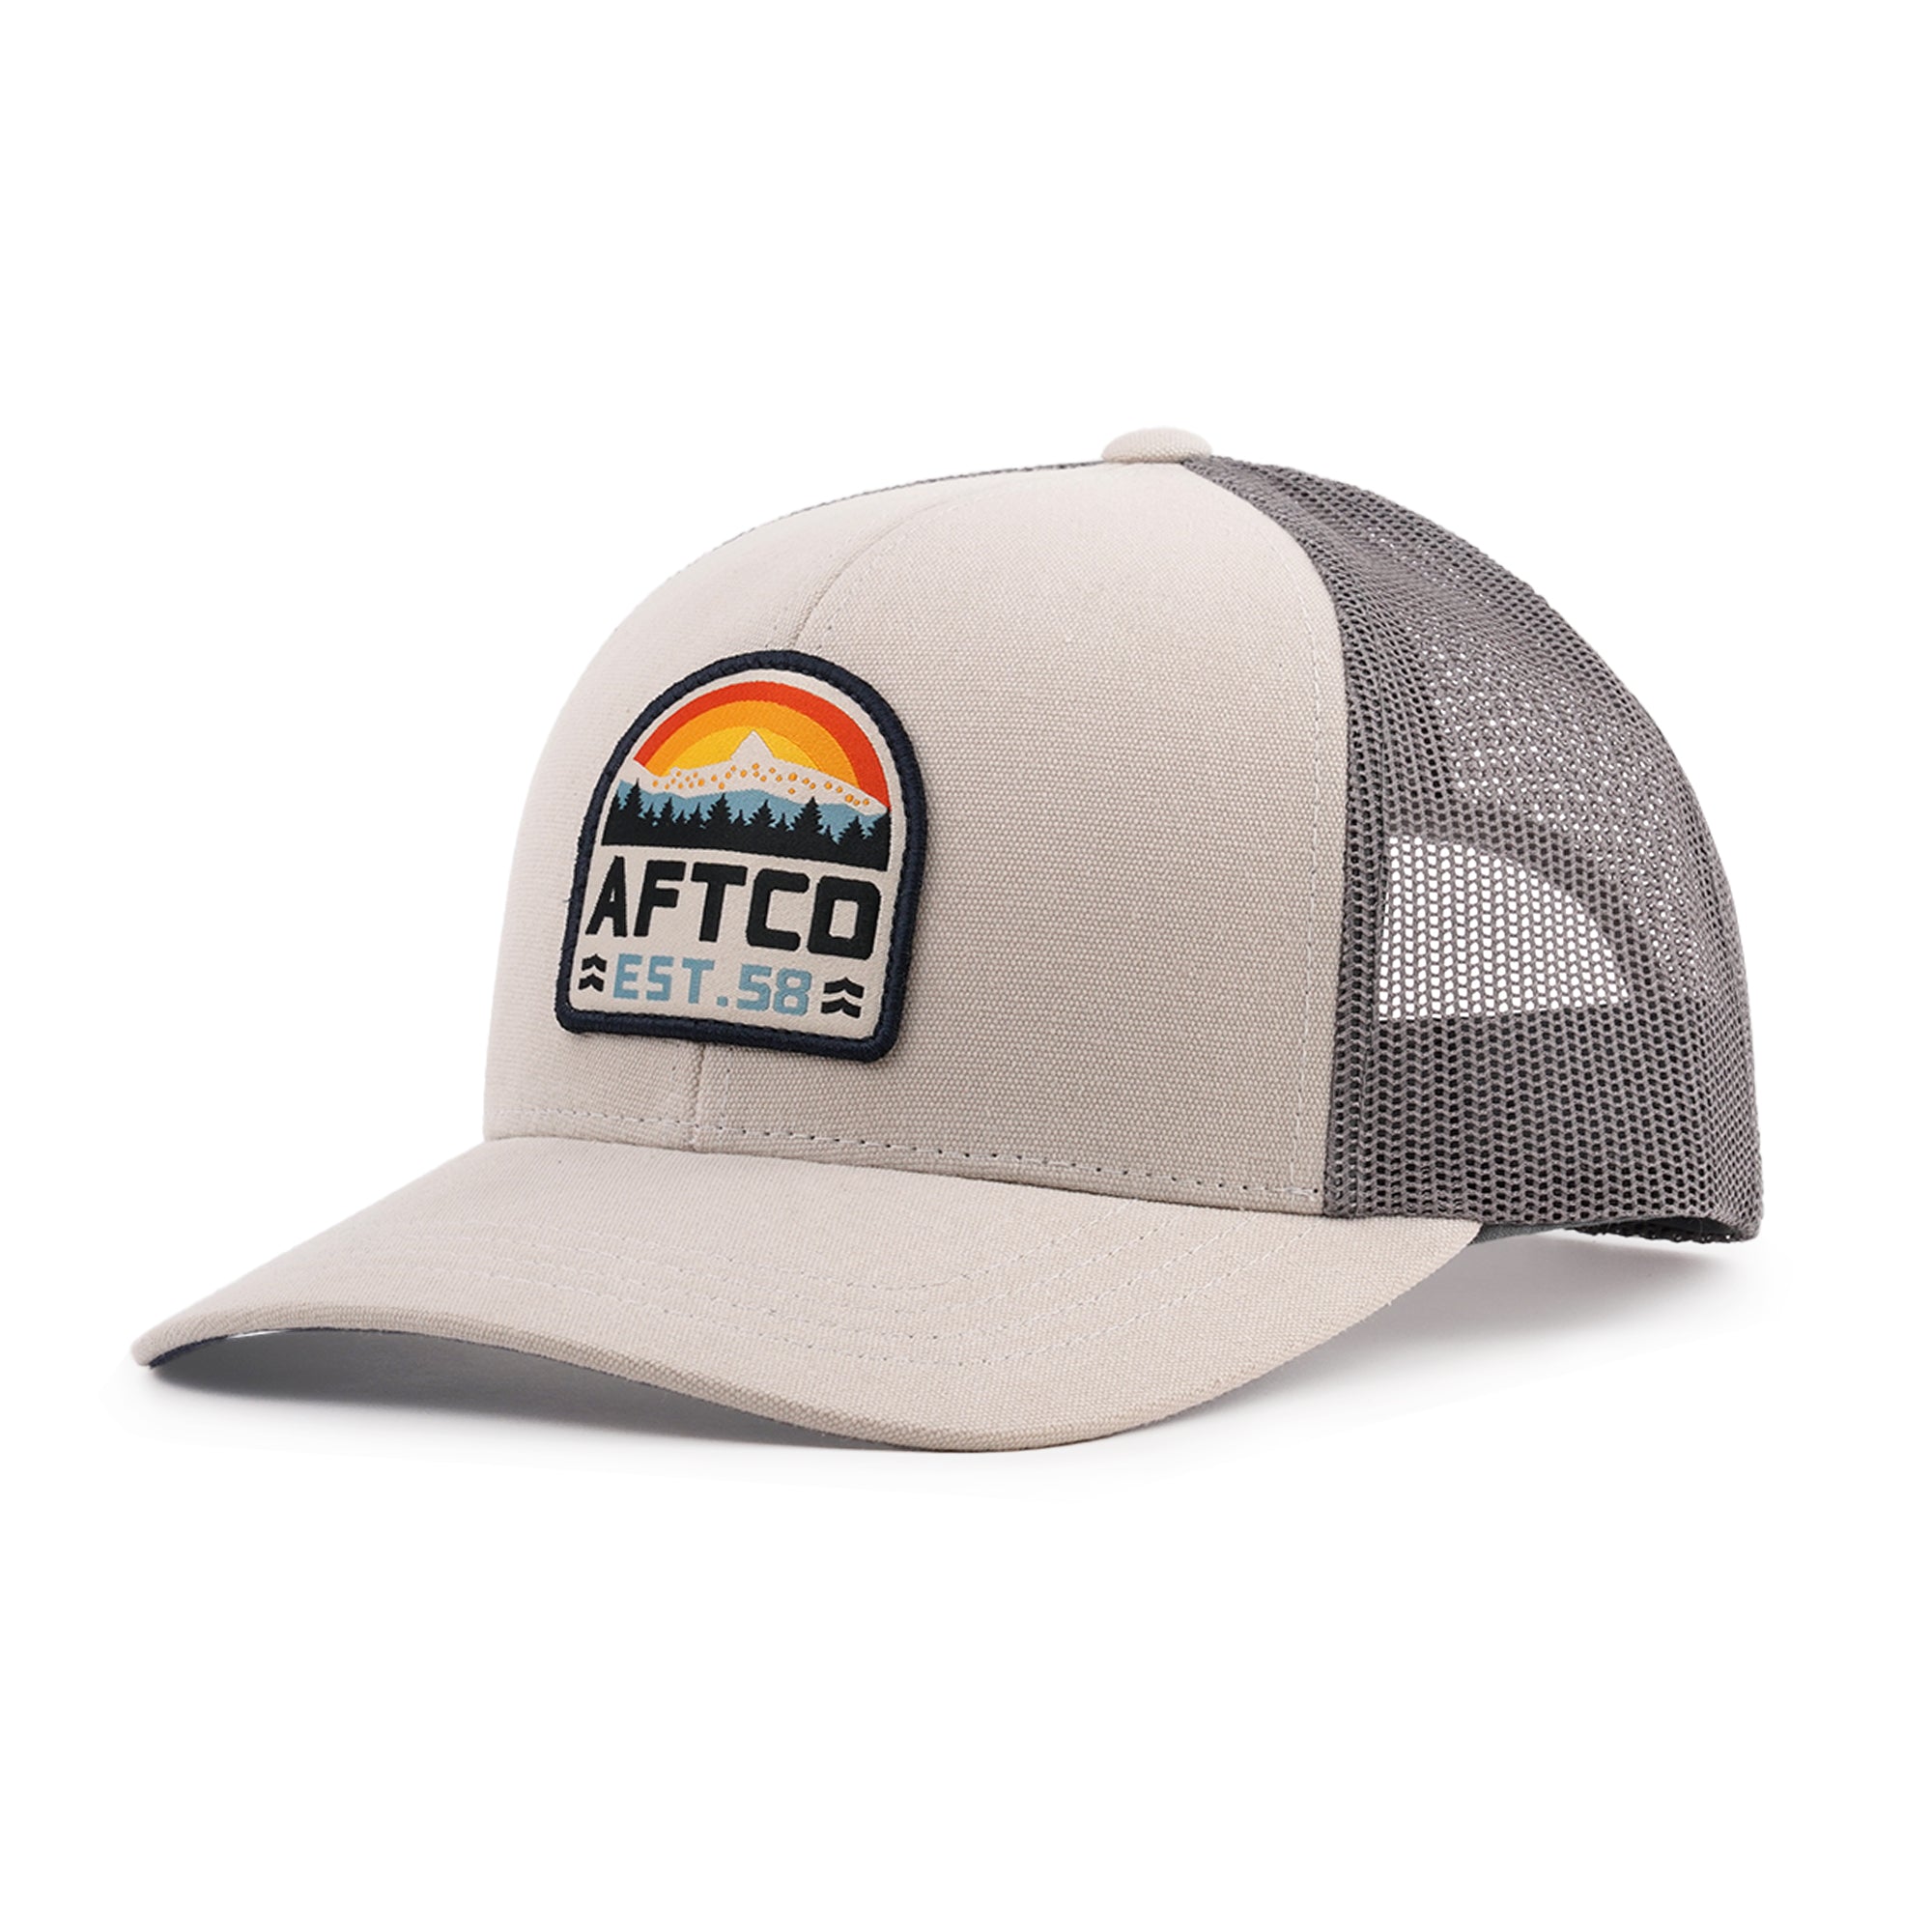 AFTCO Rustic Trucker Hat Natural